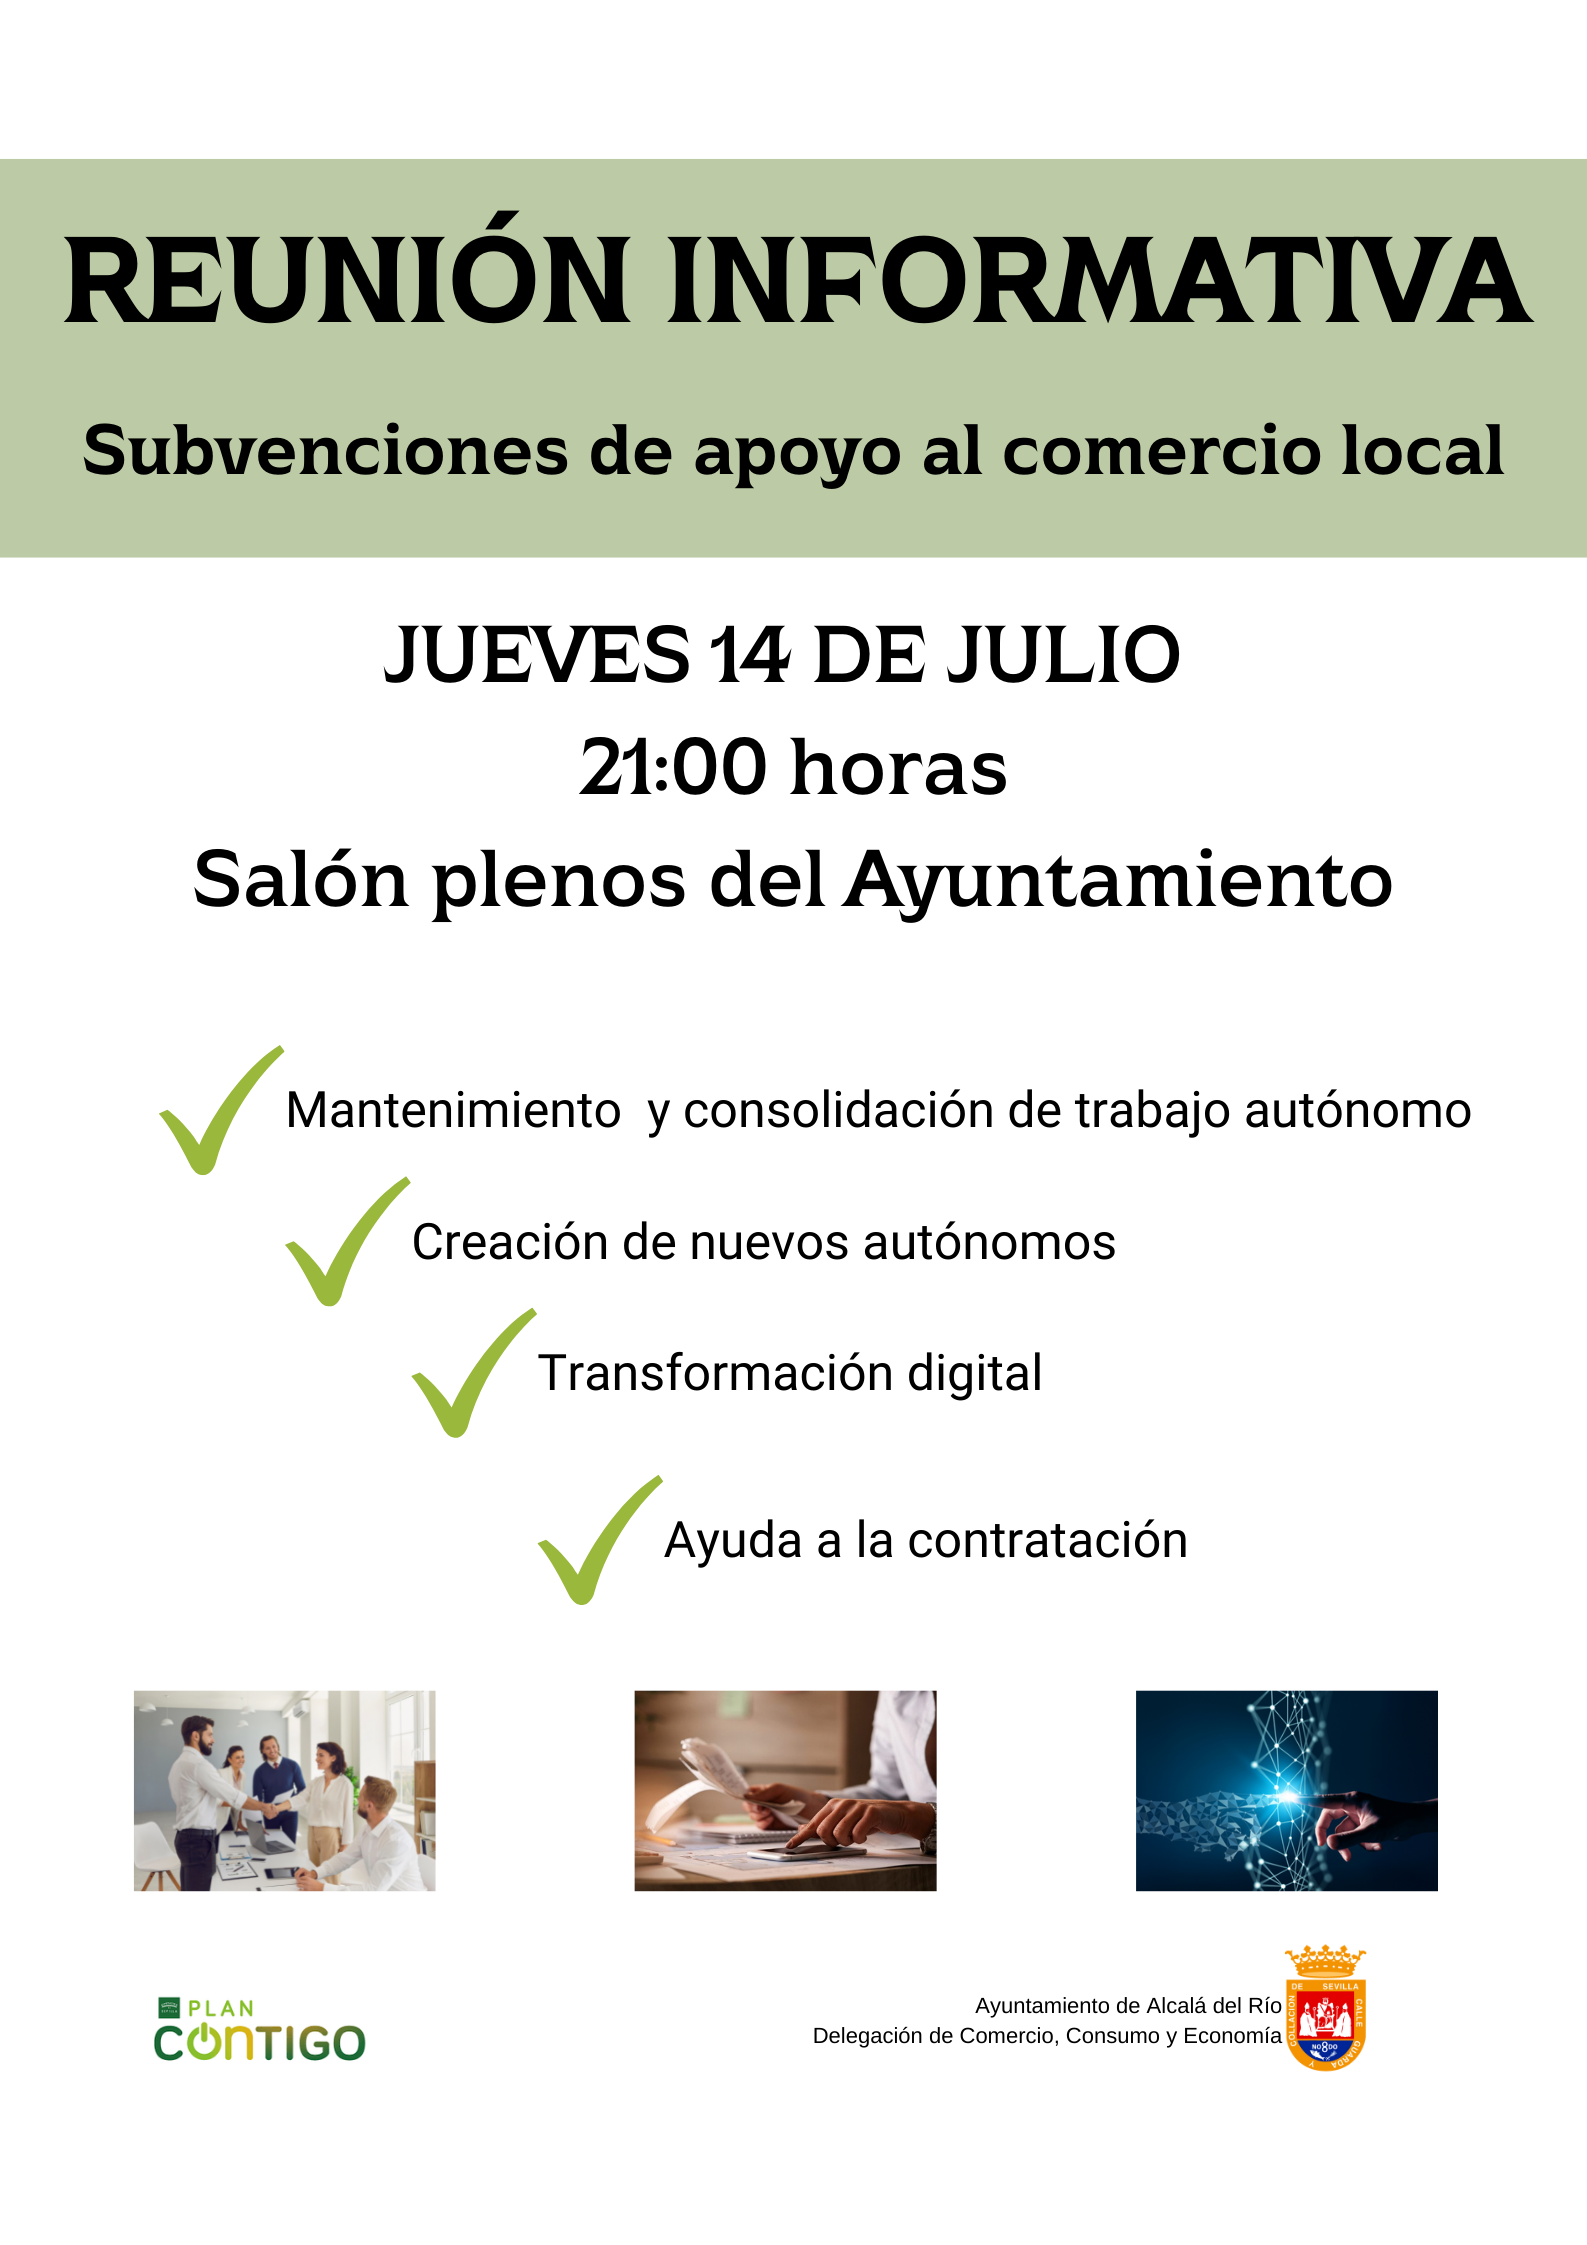 Ayuntamiento de Alcalá del Río Delegación de Comercio, Consumo y Economía